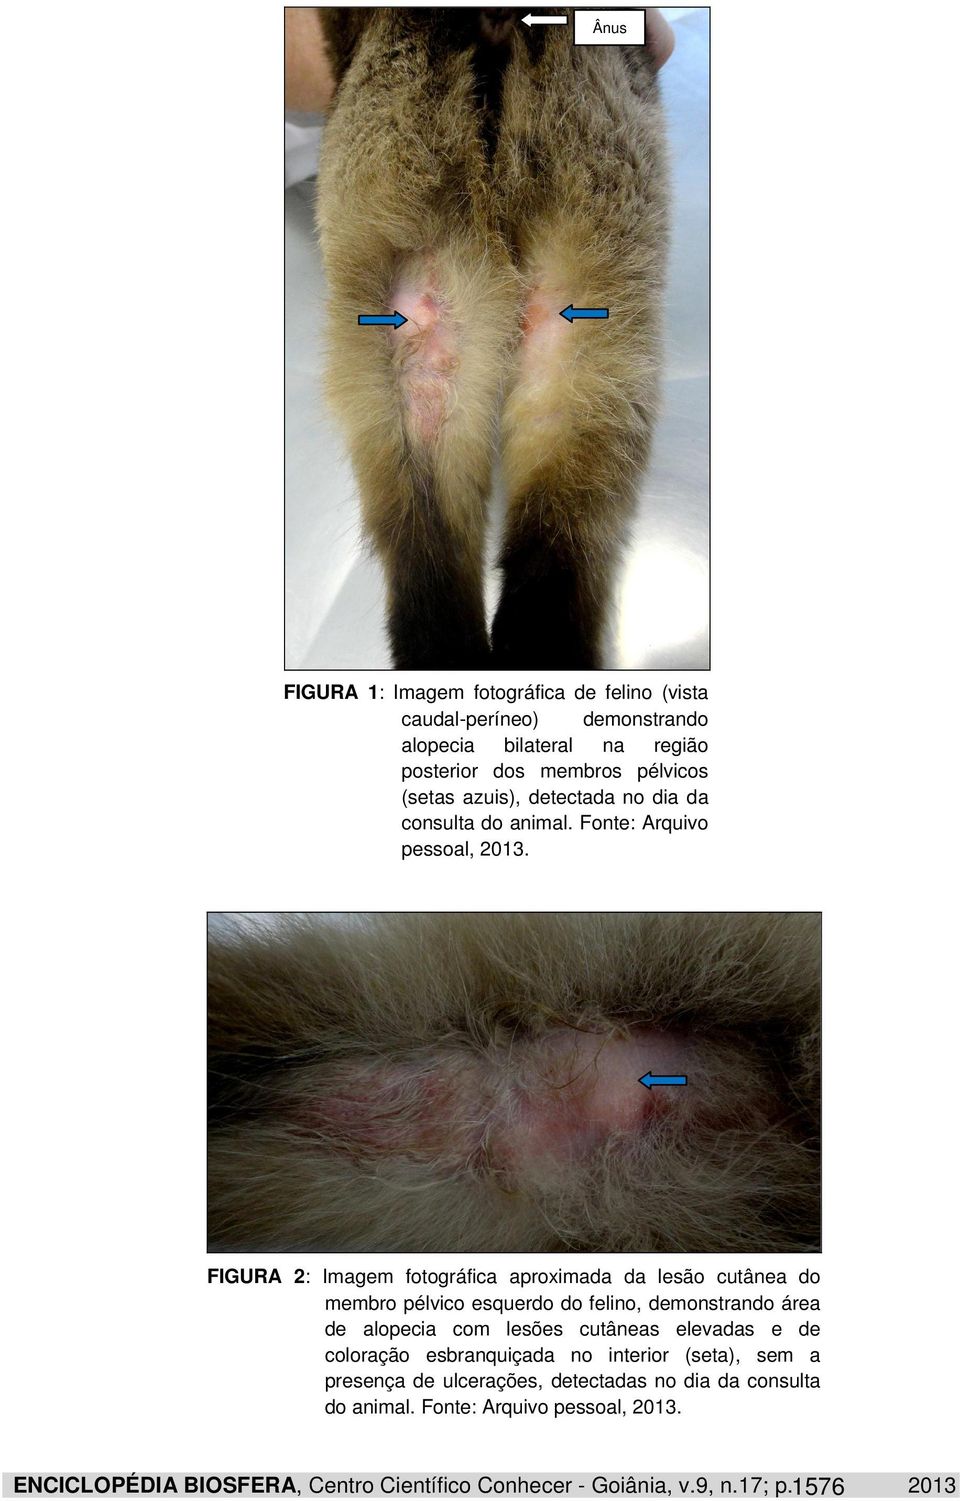 FIGURA 2: Imagem fotográfica aproximada da lesão cutânea do membro pélvico esquerdo do felino, demonstrando área de alopecia com lesões cutâneas elevadas